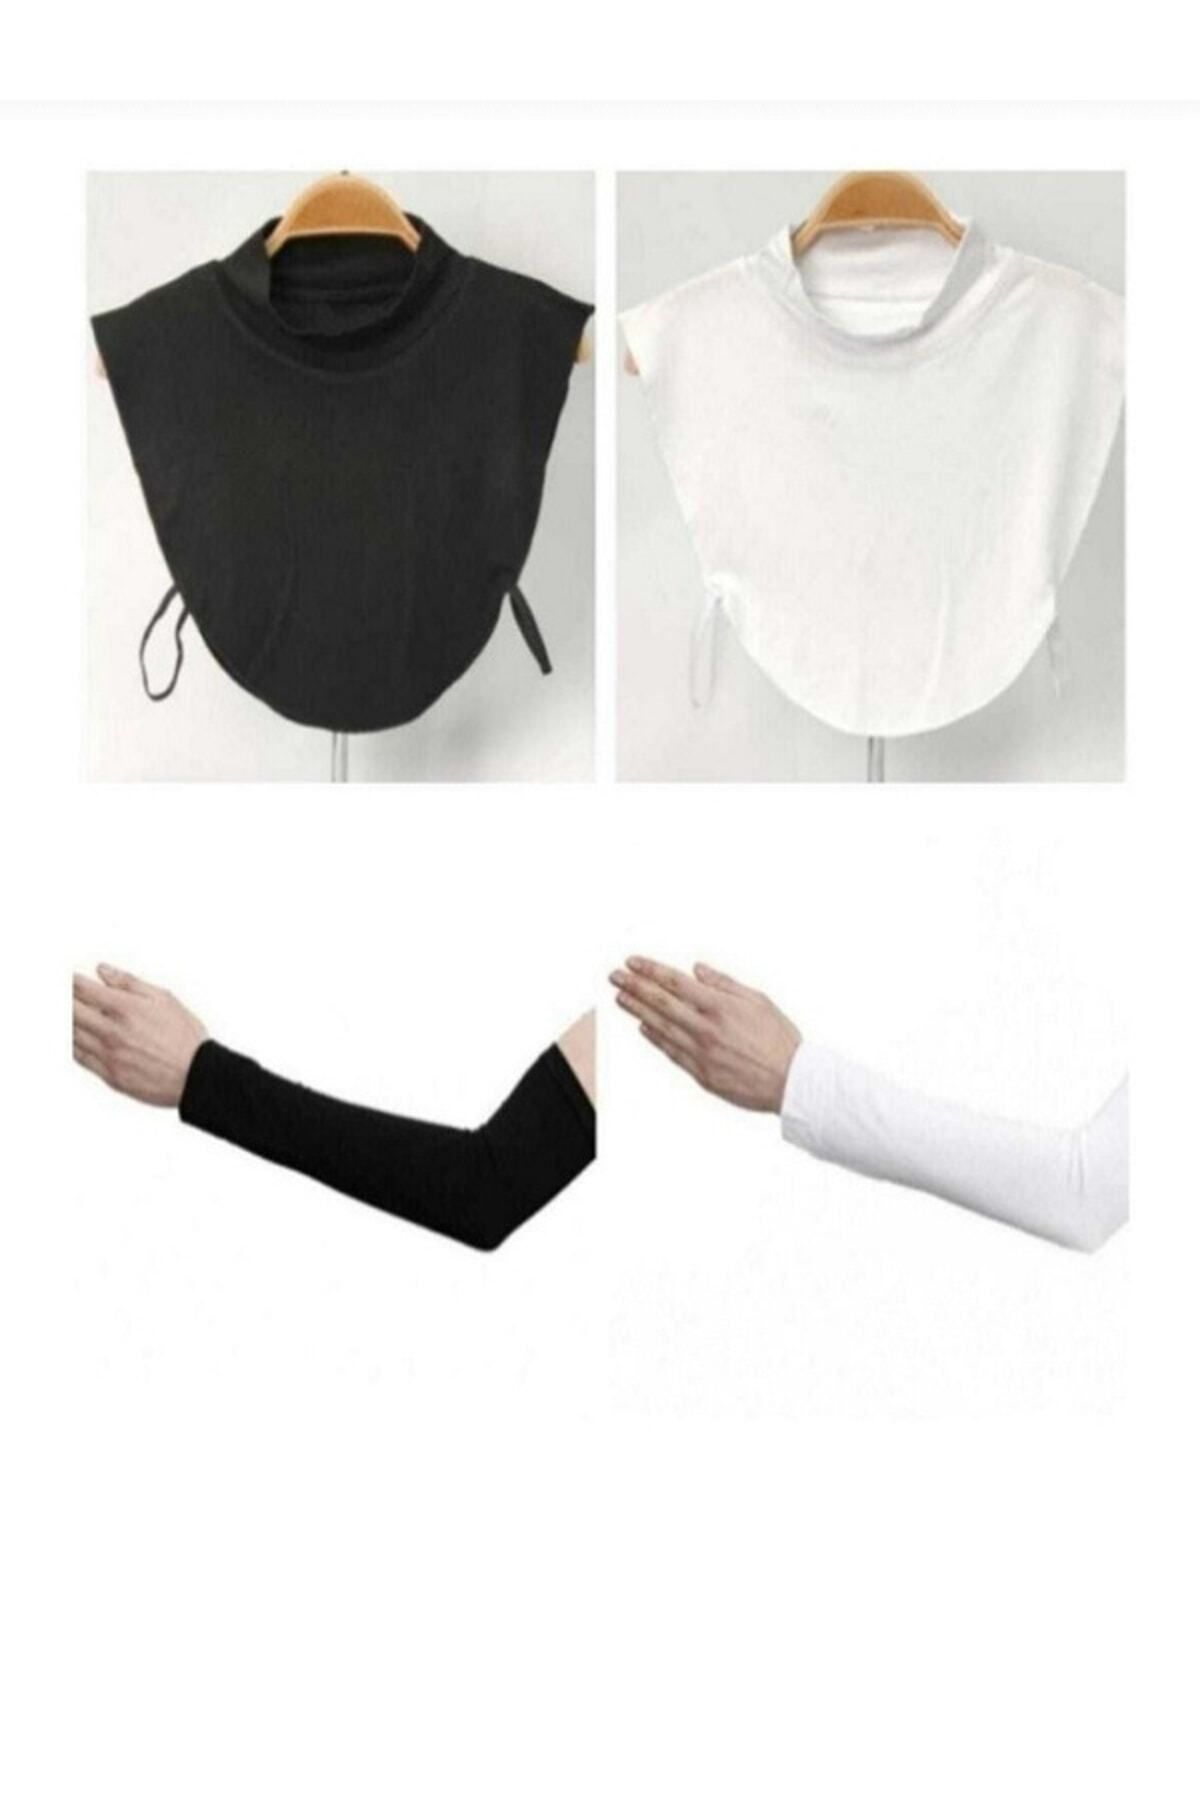 BEYAZ DÜŞ Boyunluk Kolluk Set 2 Şer Adet Siyah Beyaz Renk Tesettür Giyim